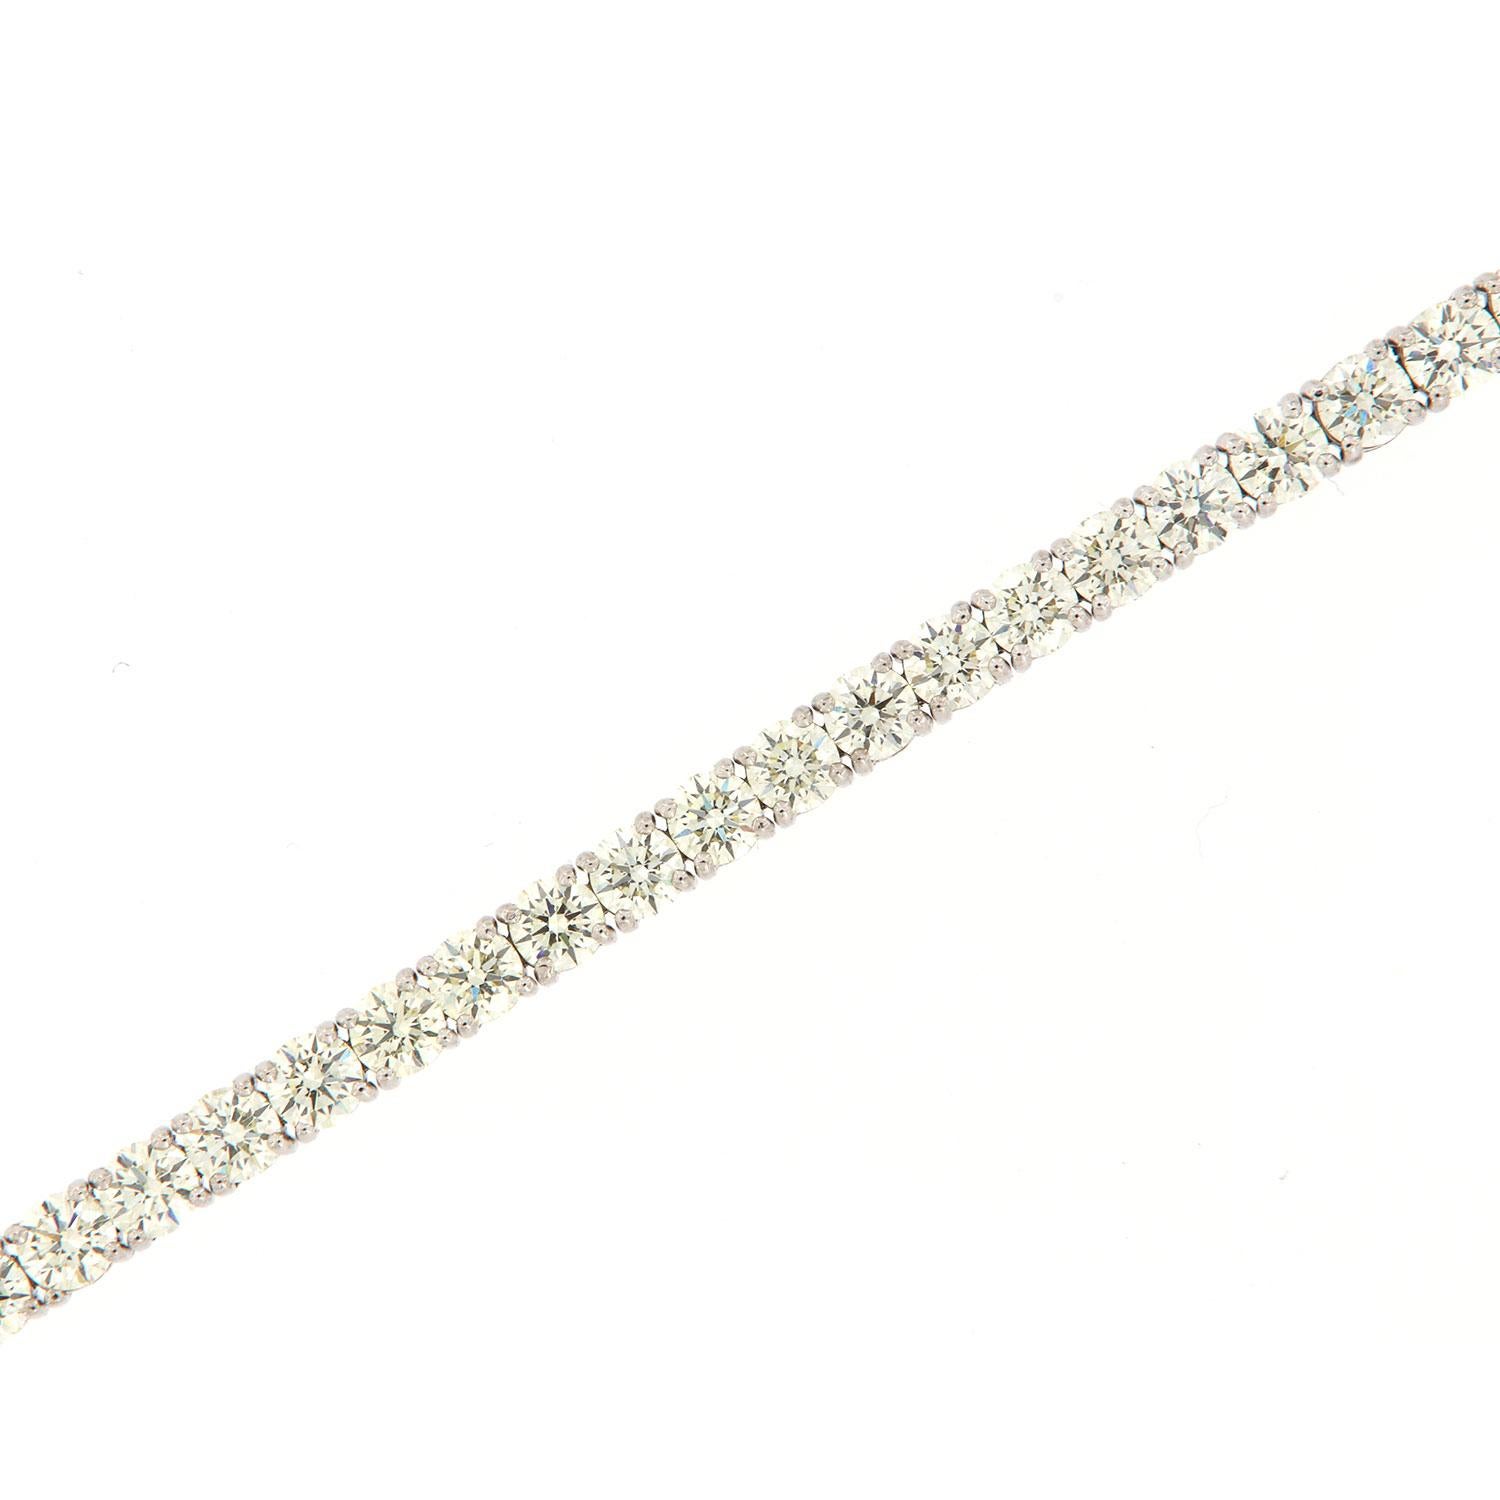 Ce bracelet de tennis présente quarante-quatre (44) diamants ronds de taille idéale parfaitement assortis, pour un poids total de 11,03 carats, sertis dans quatre (4) griffes en or blanc 18 carats. Couleur moyenne J/K Clarté moyenne VS2 dans un